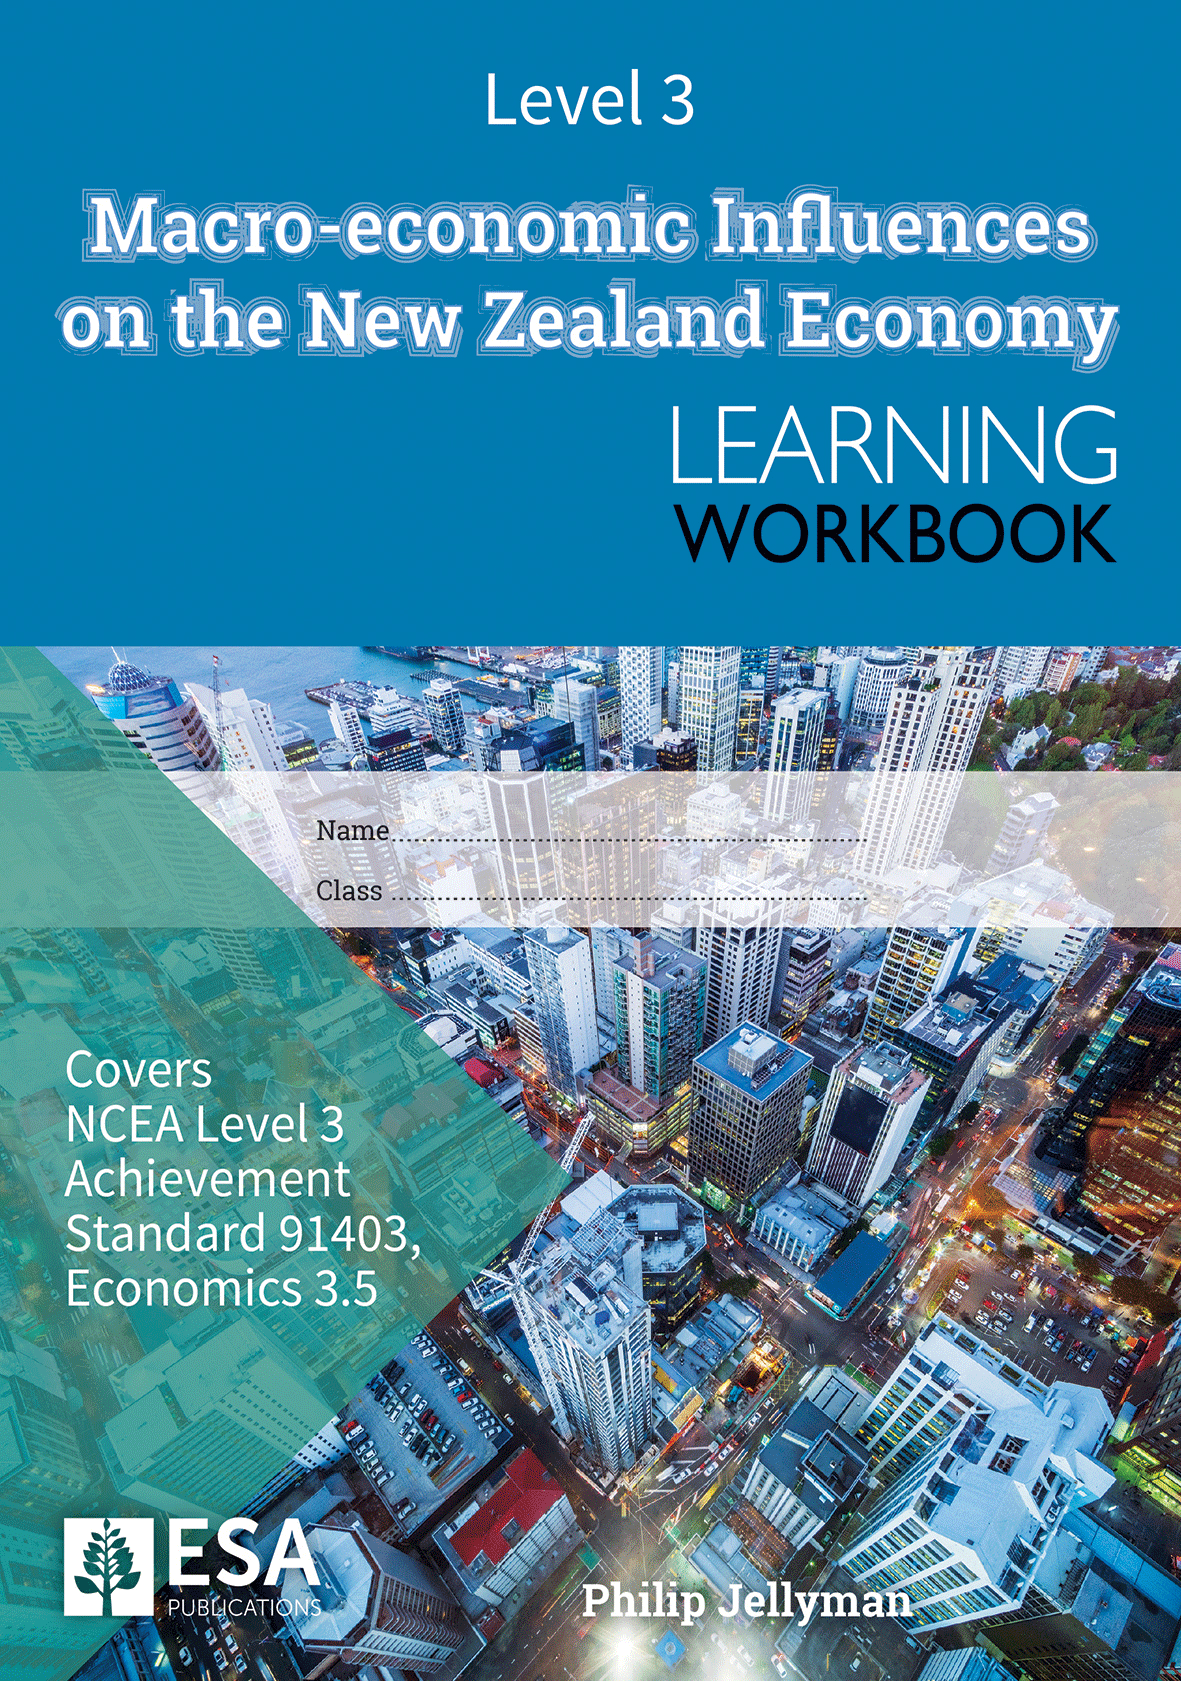 Level 3 Macro-economic Influences on the New Zealand Economy 3.5 Learning Workbook